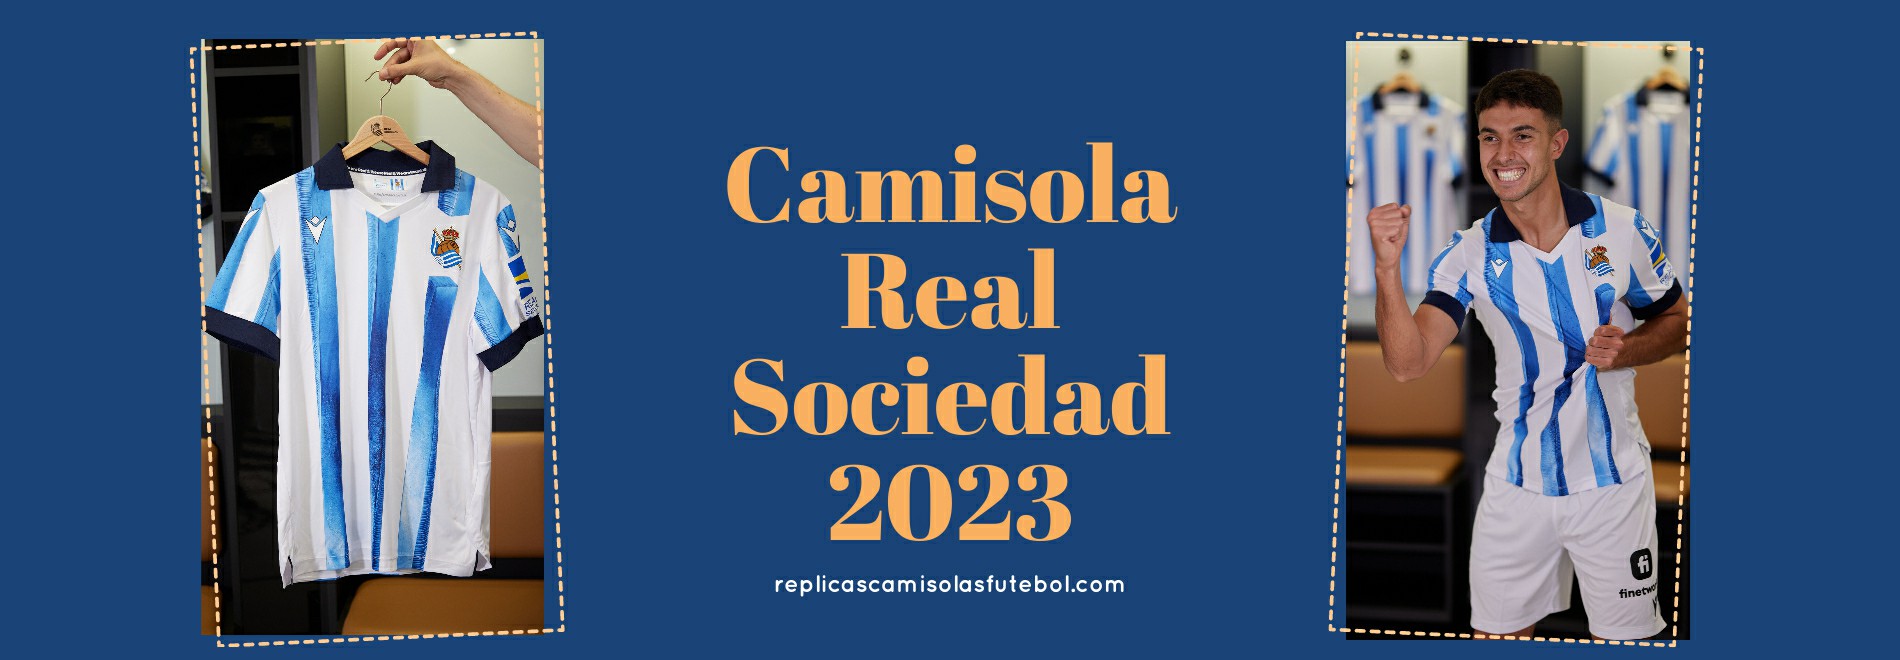 Camisola Real Sociedad 2023-2024